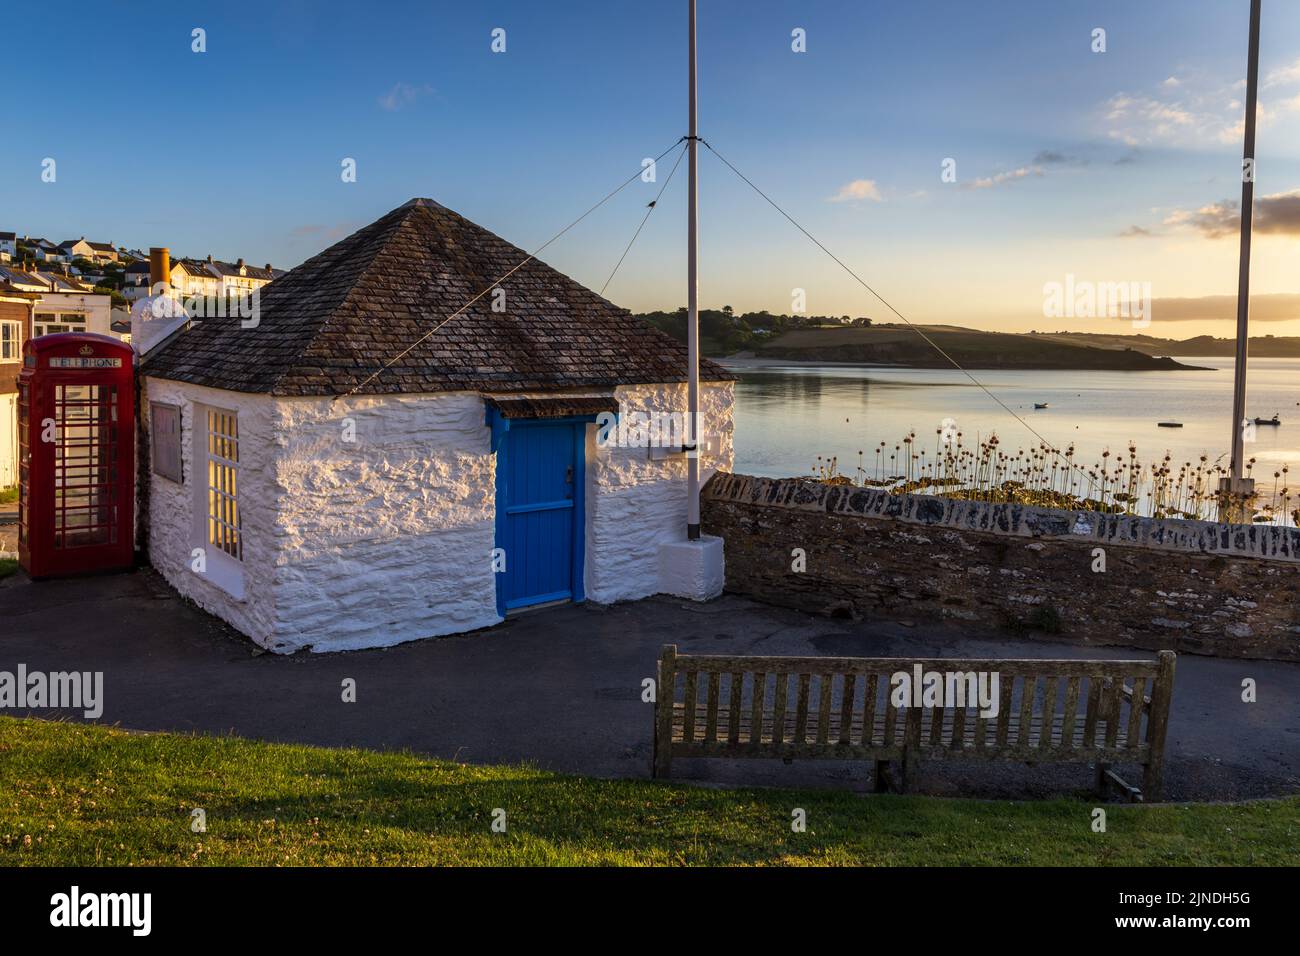 Le vieux refuge des pêcheurs de Portscatho, en Cornouailles. Ce joli petit bâtiment d'une seule pièce se trouve sur le sommet d'une falaise surplombant le port de Portscatho. Banque D'Images